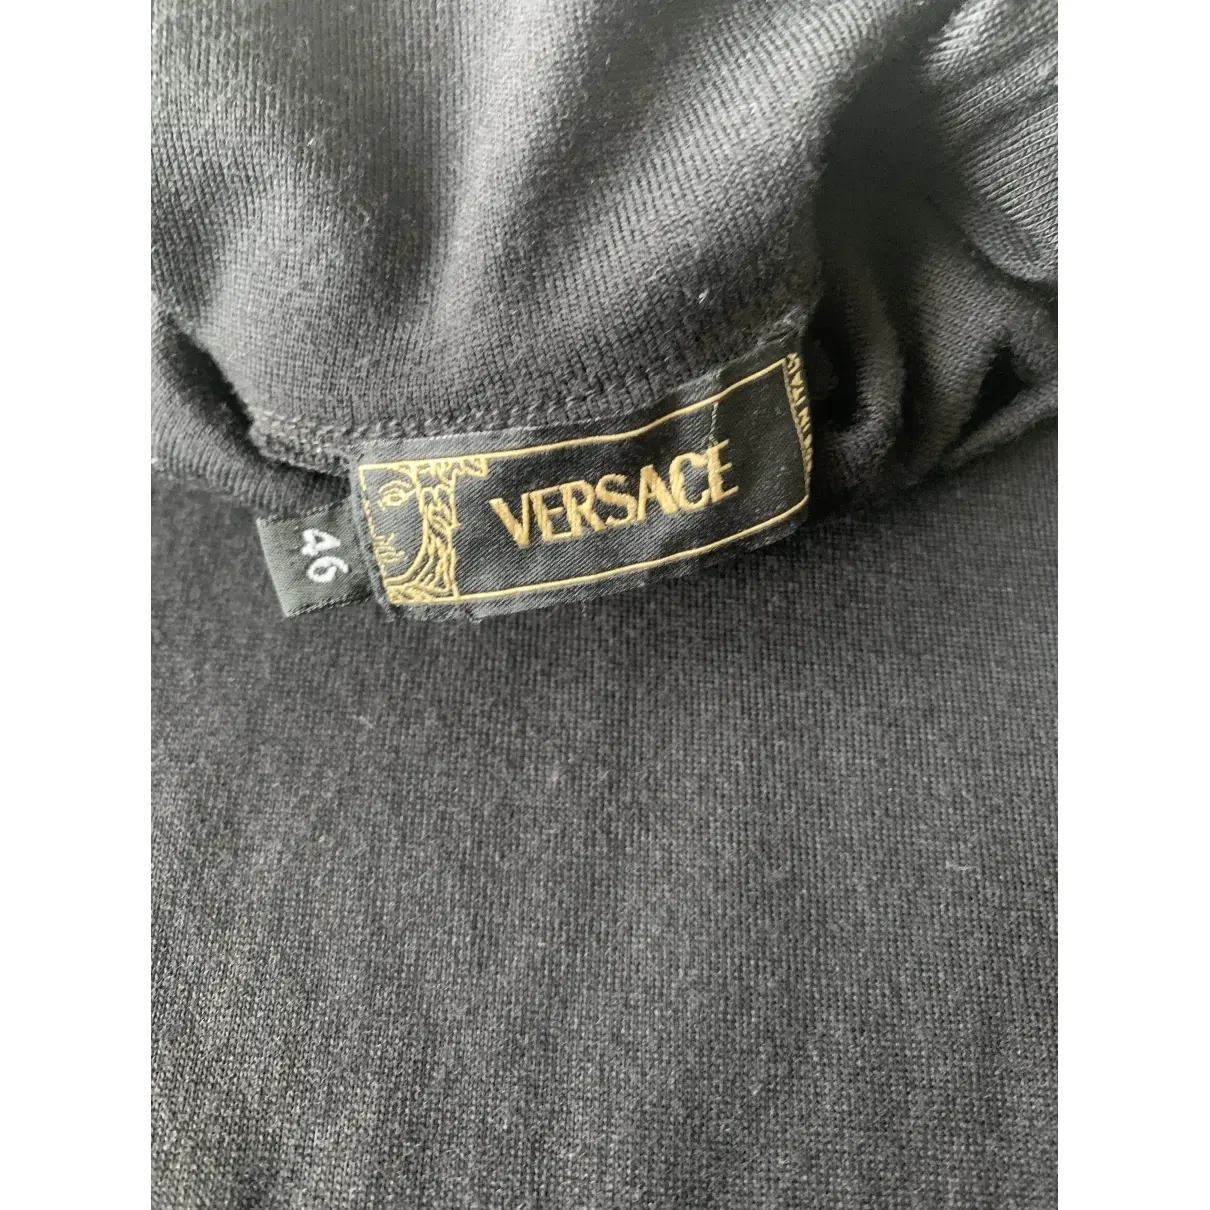 Buy Versace Wool pull online